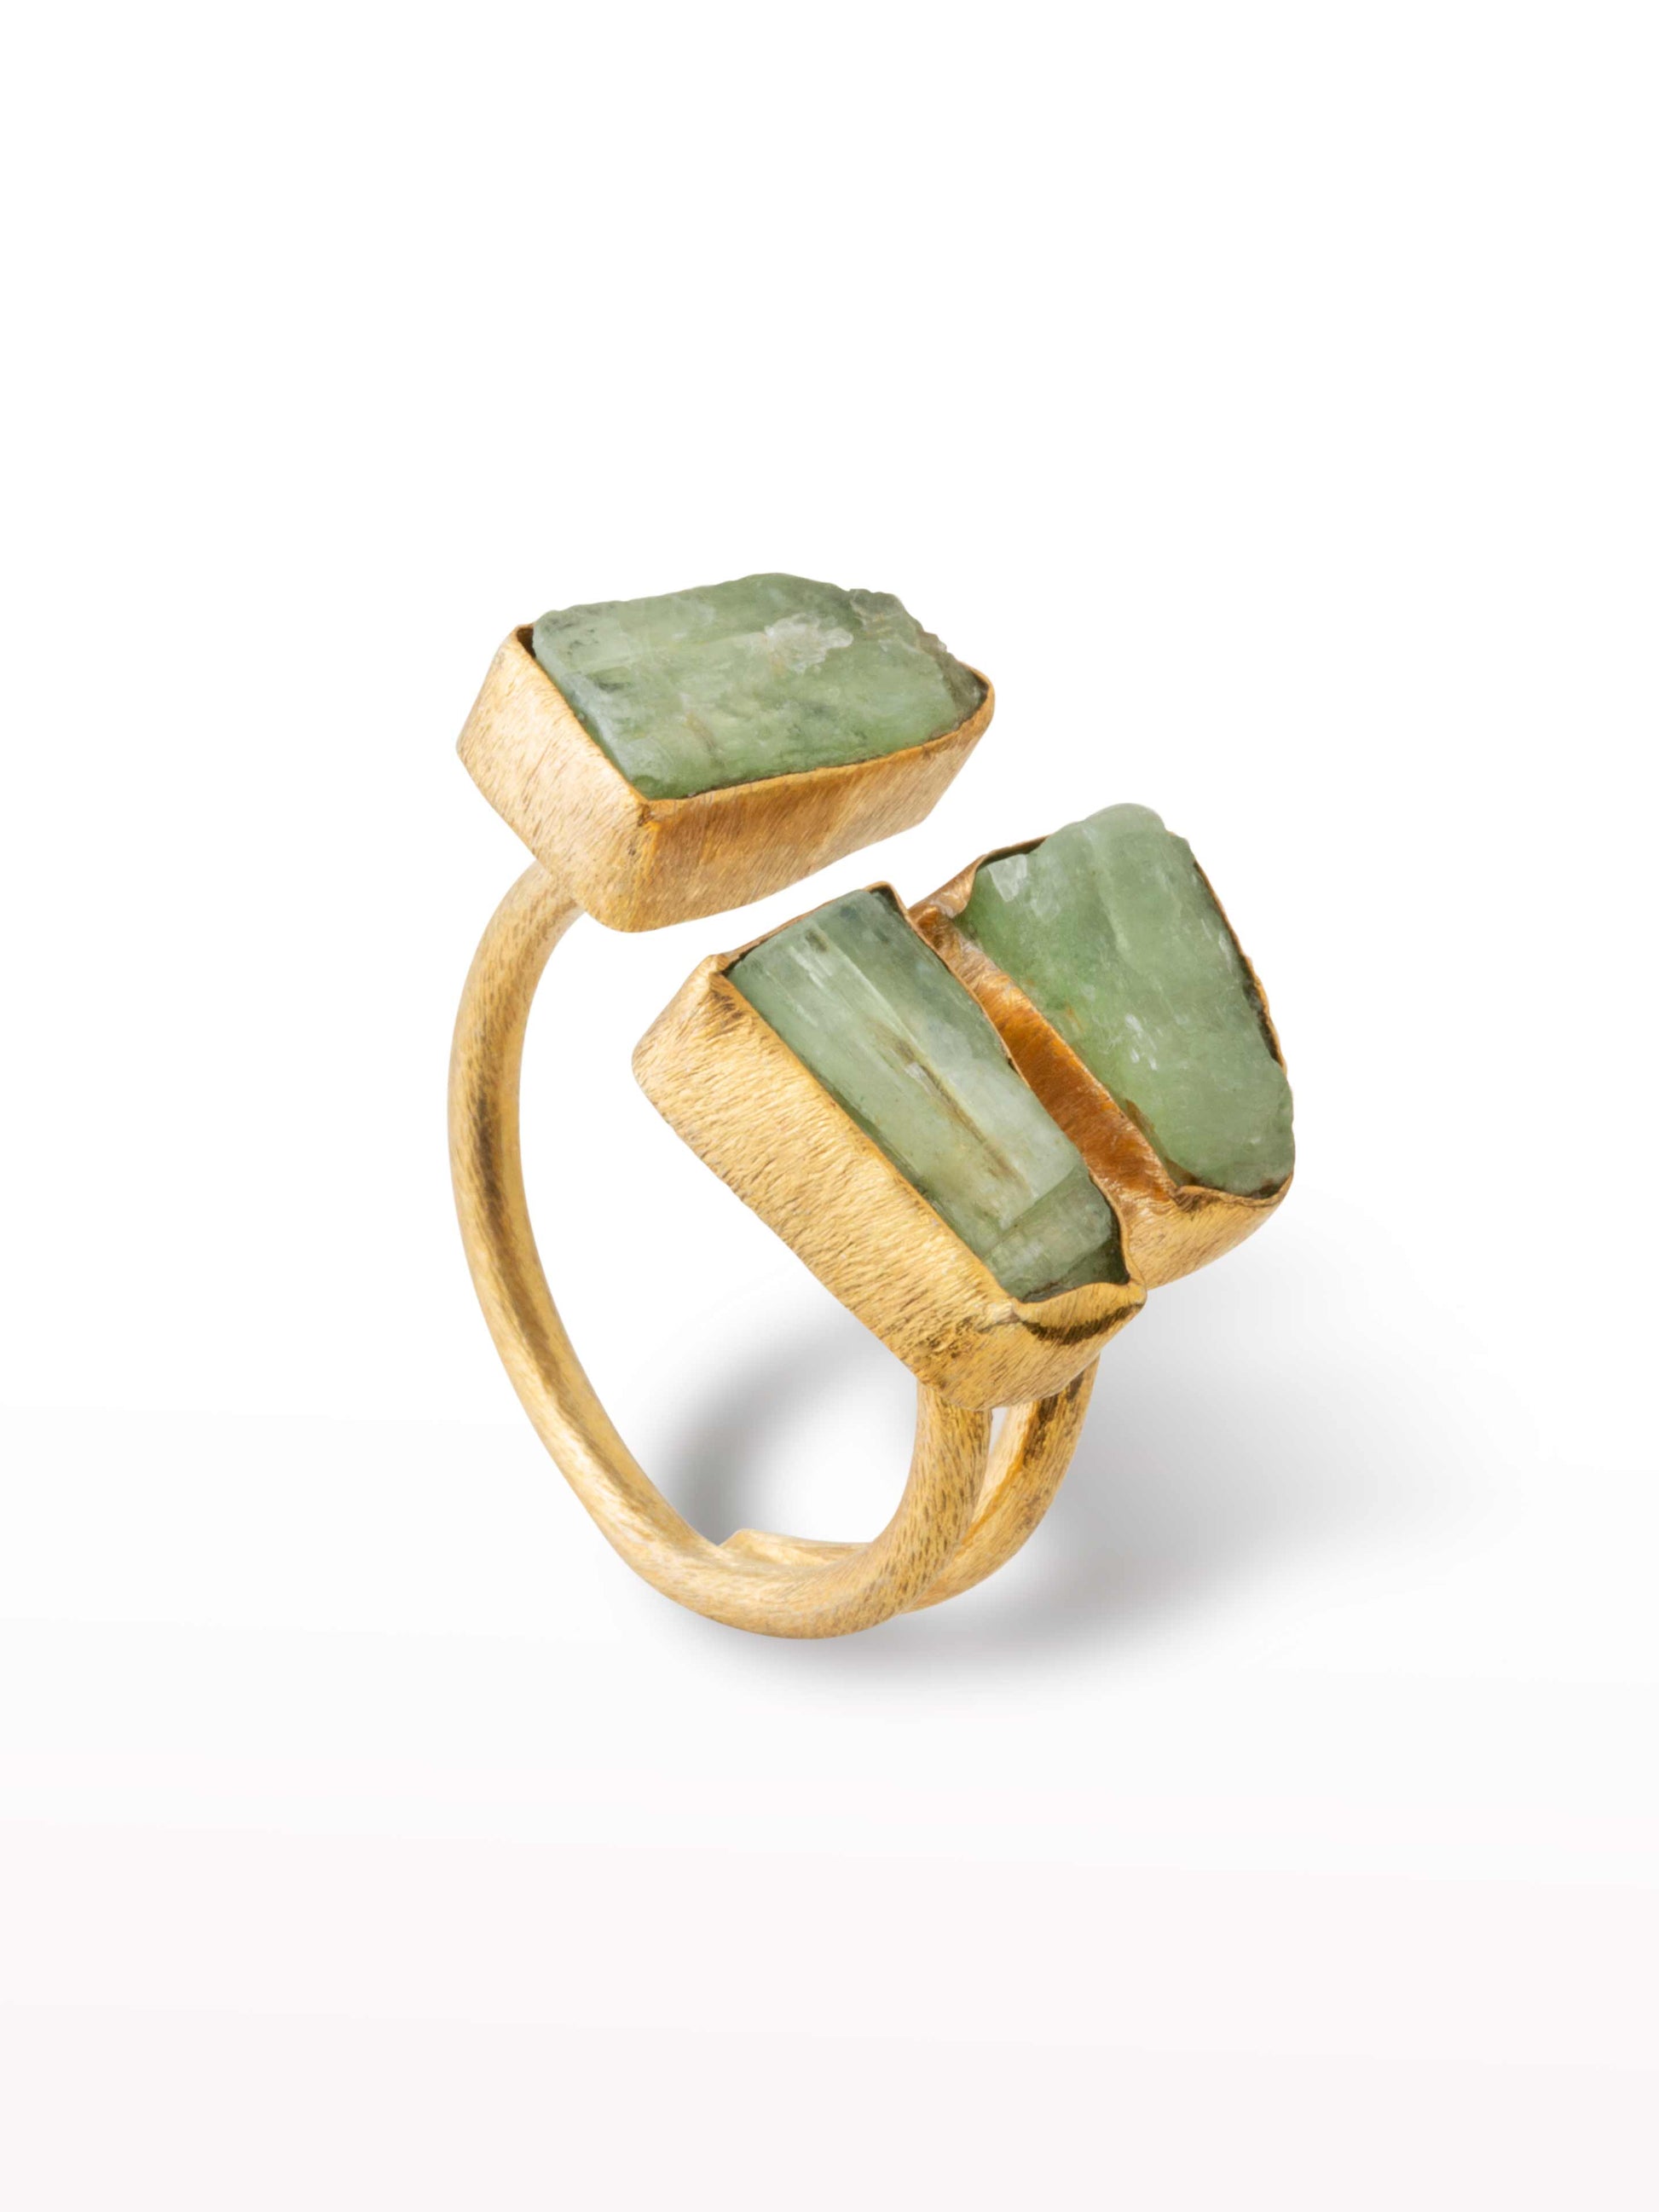 green kyanite set in gold ring